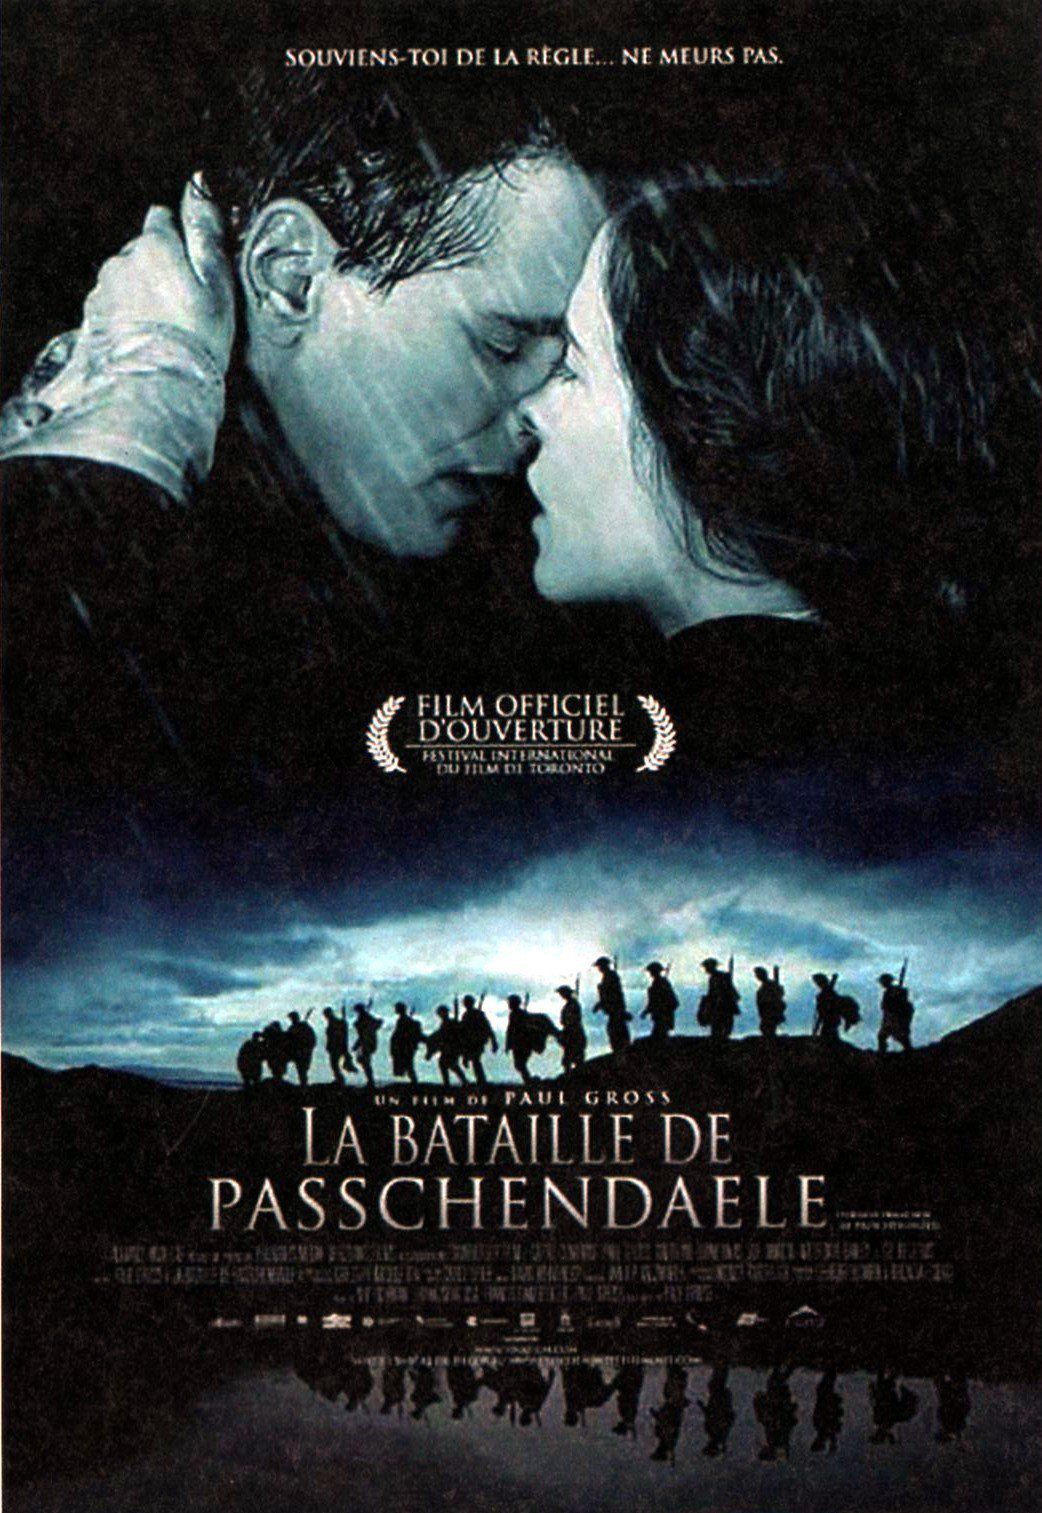 La Bataille de Passchendaele - Film (2008) streaming VF gratuit complet